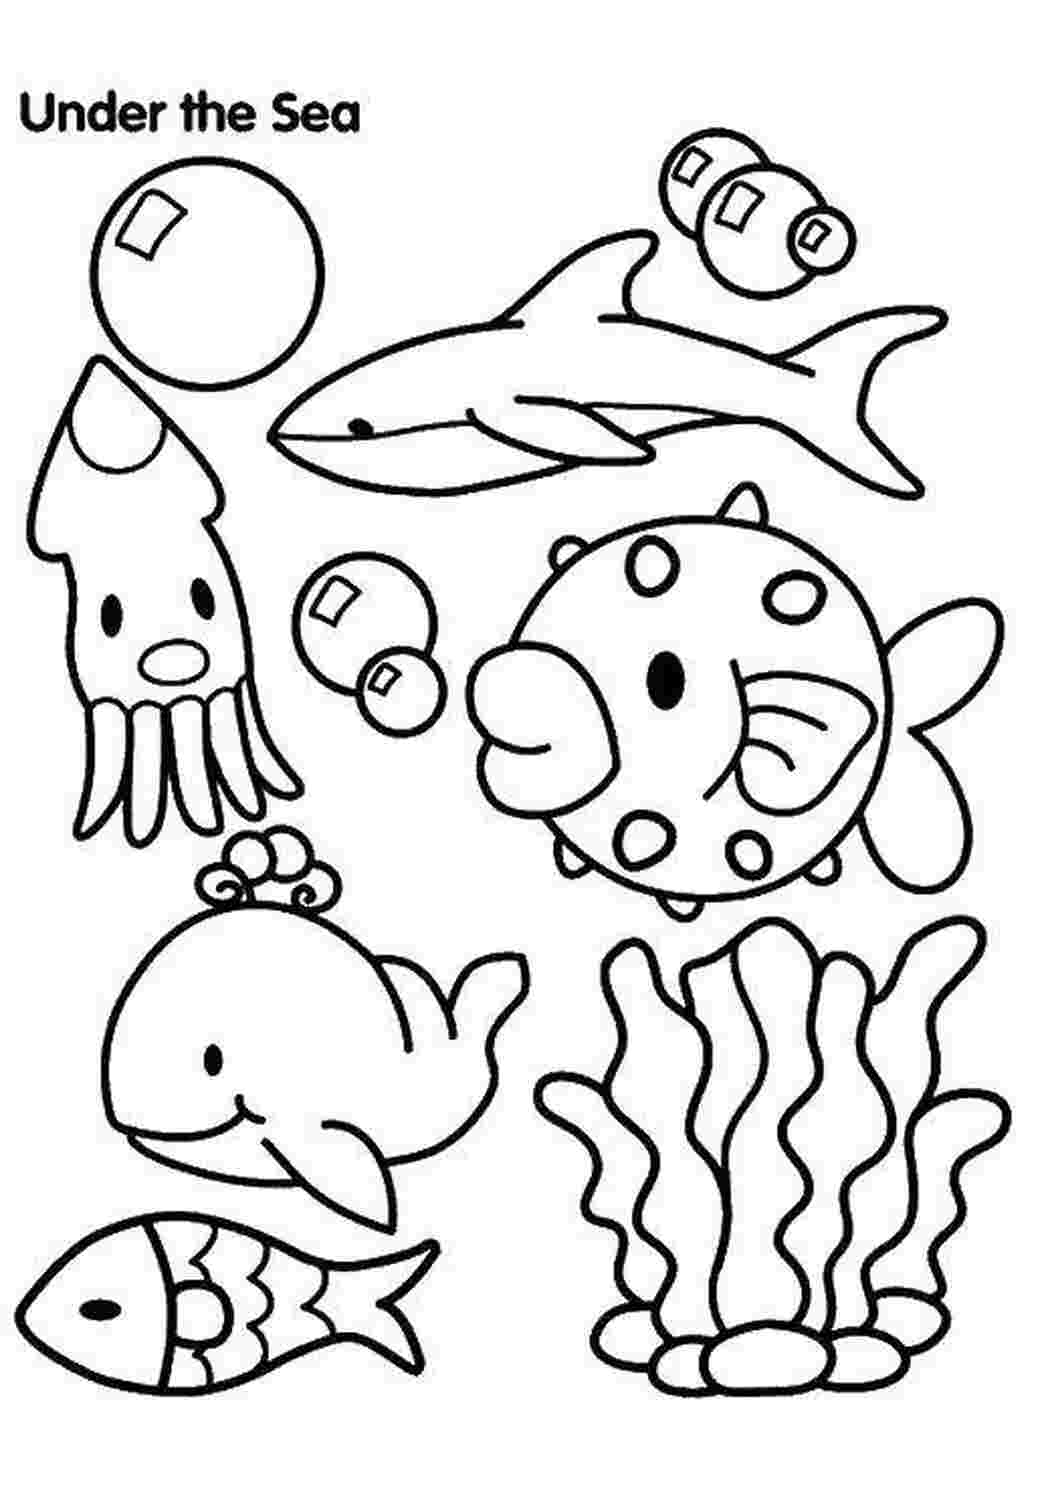 Раскраски Под водой морские обитатели под водой, морские обитатели